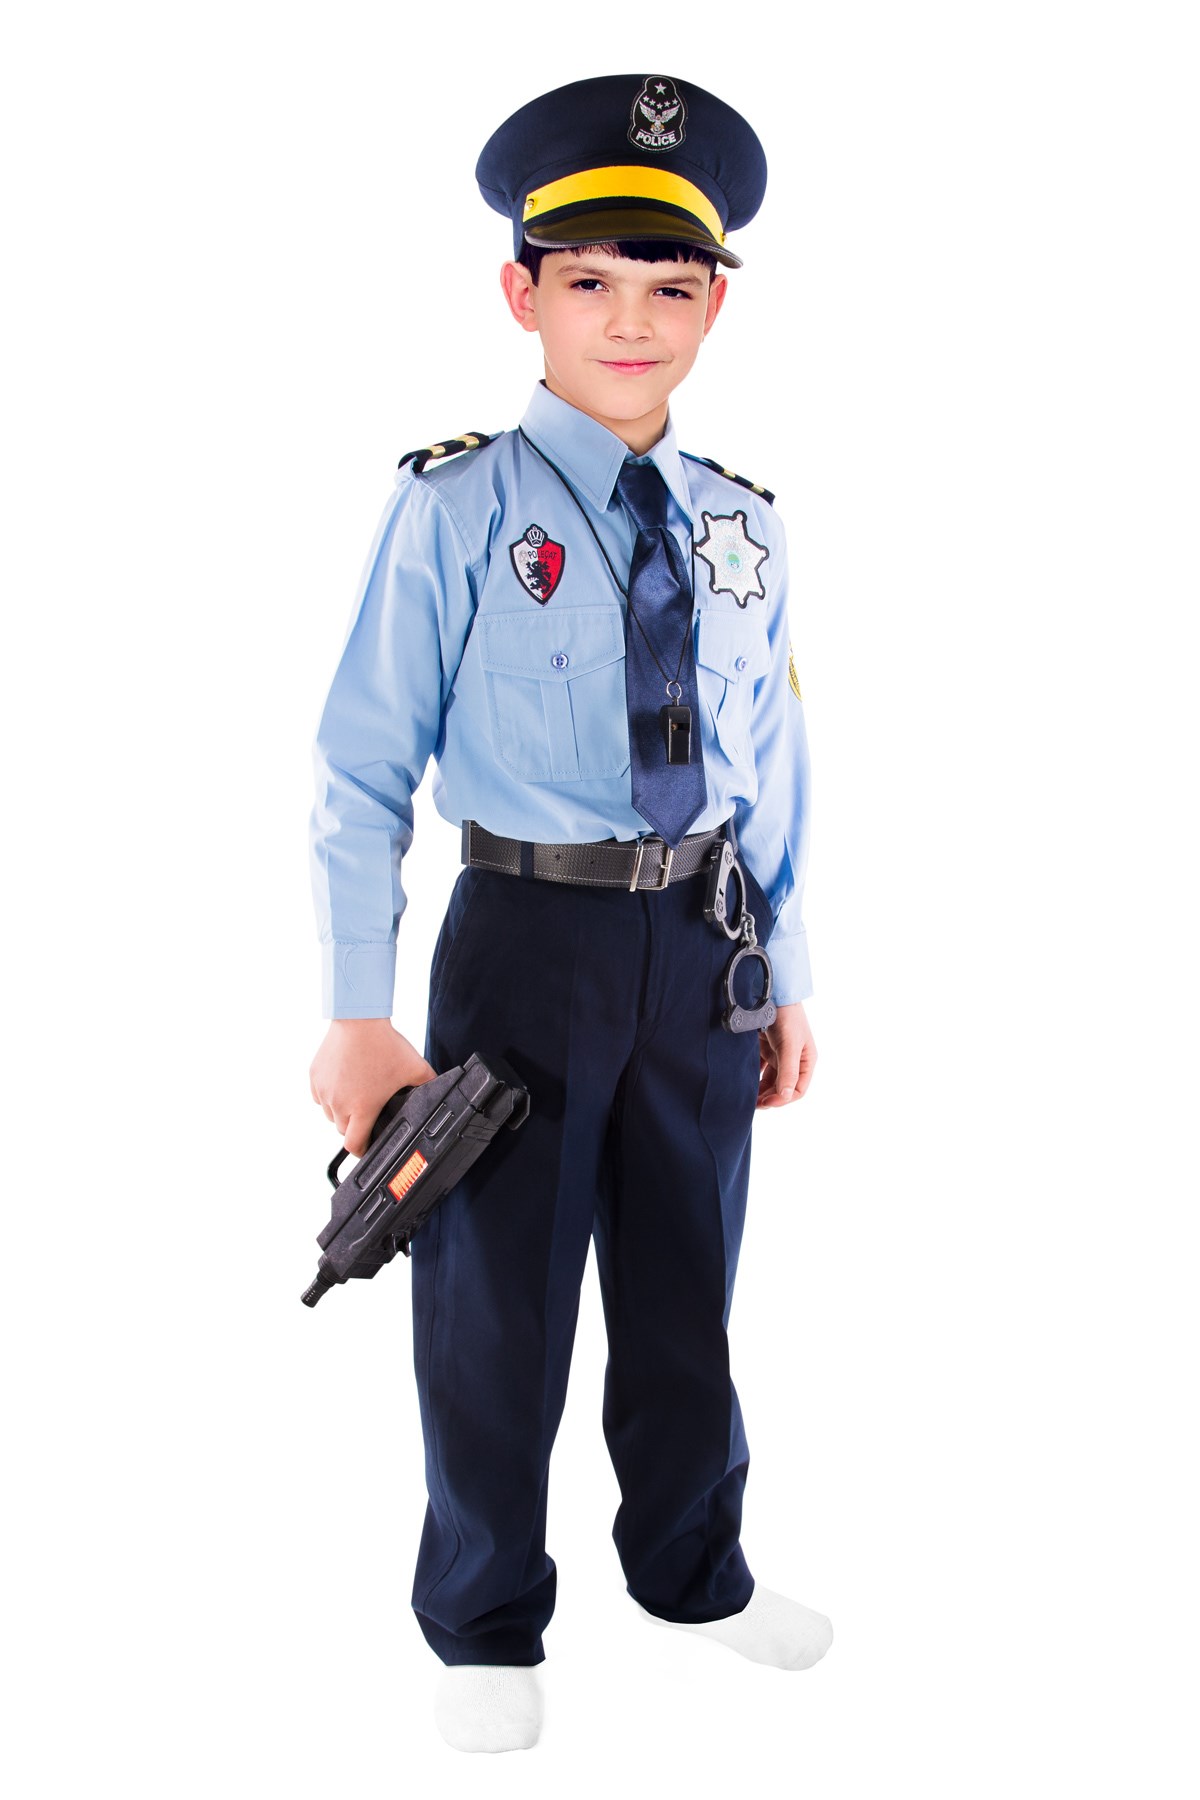 Yabancı Polis Kostümü Çocuk Kıyafeti - Çocuk Polis Kostümü Modelleri |  Oulabi Mir